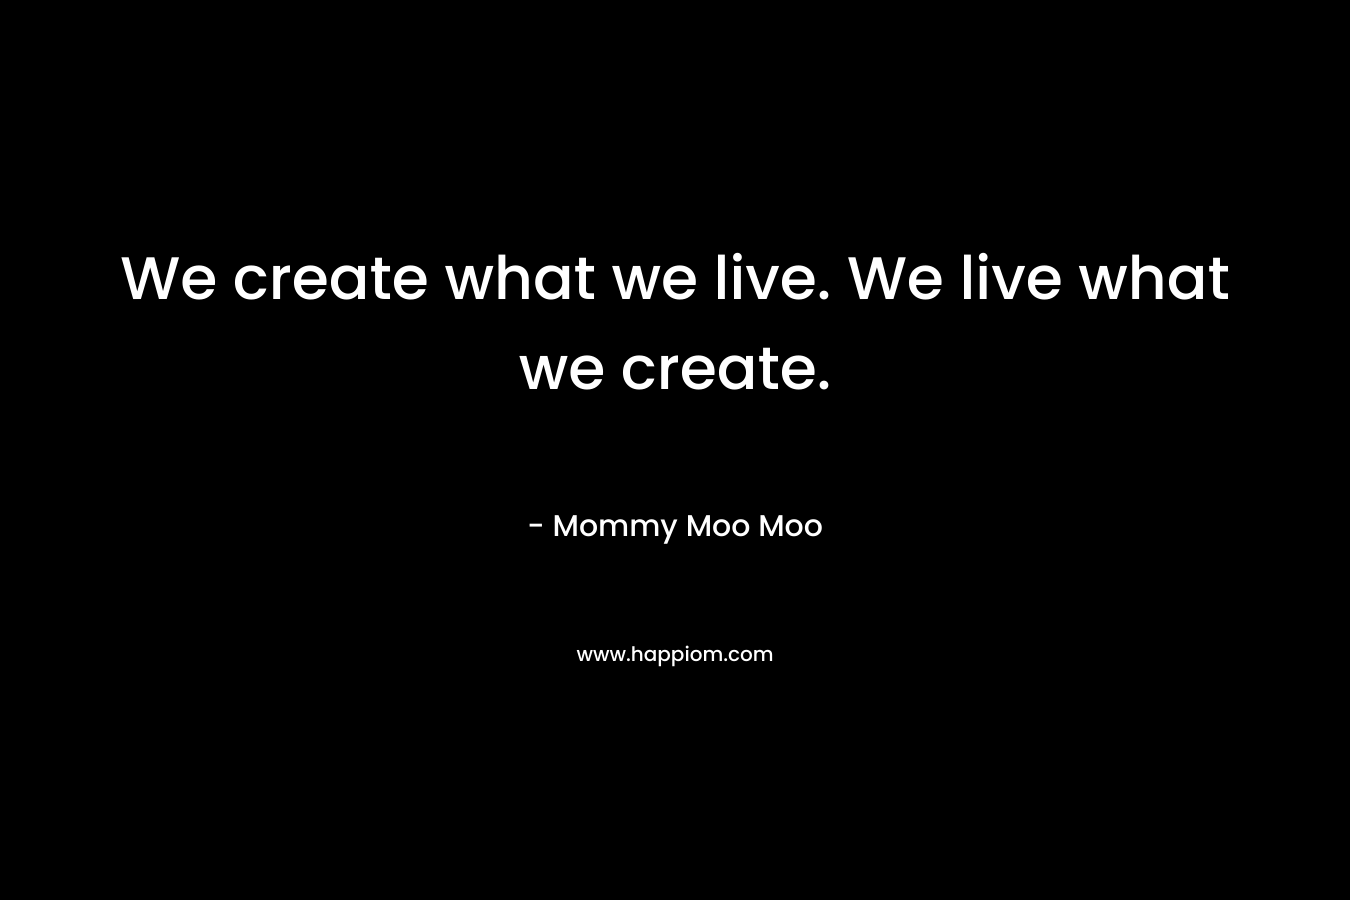 We create what we live. We live what we create.